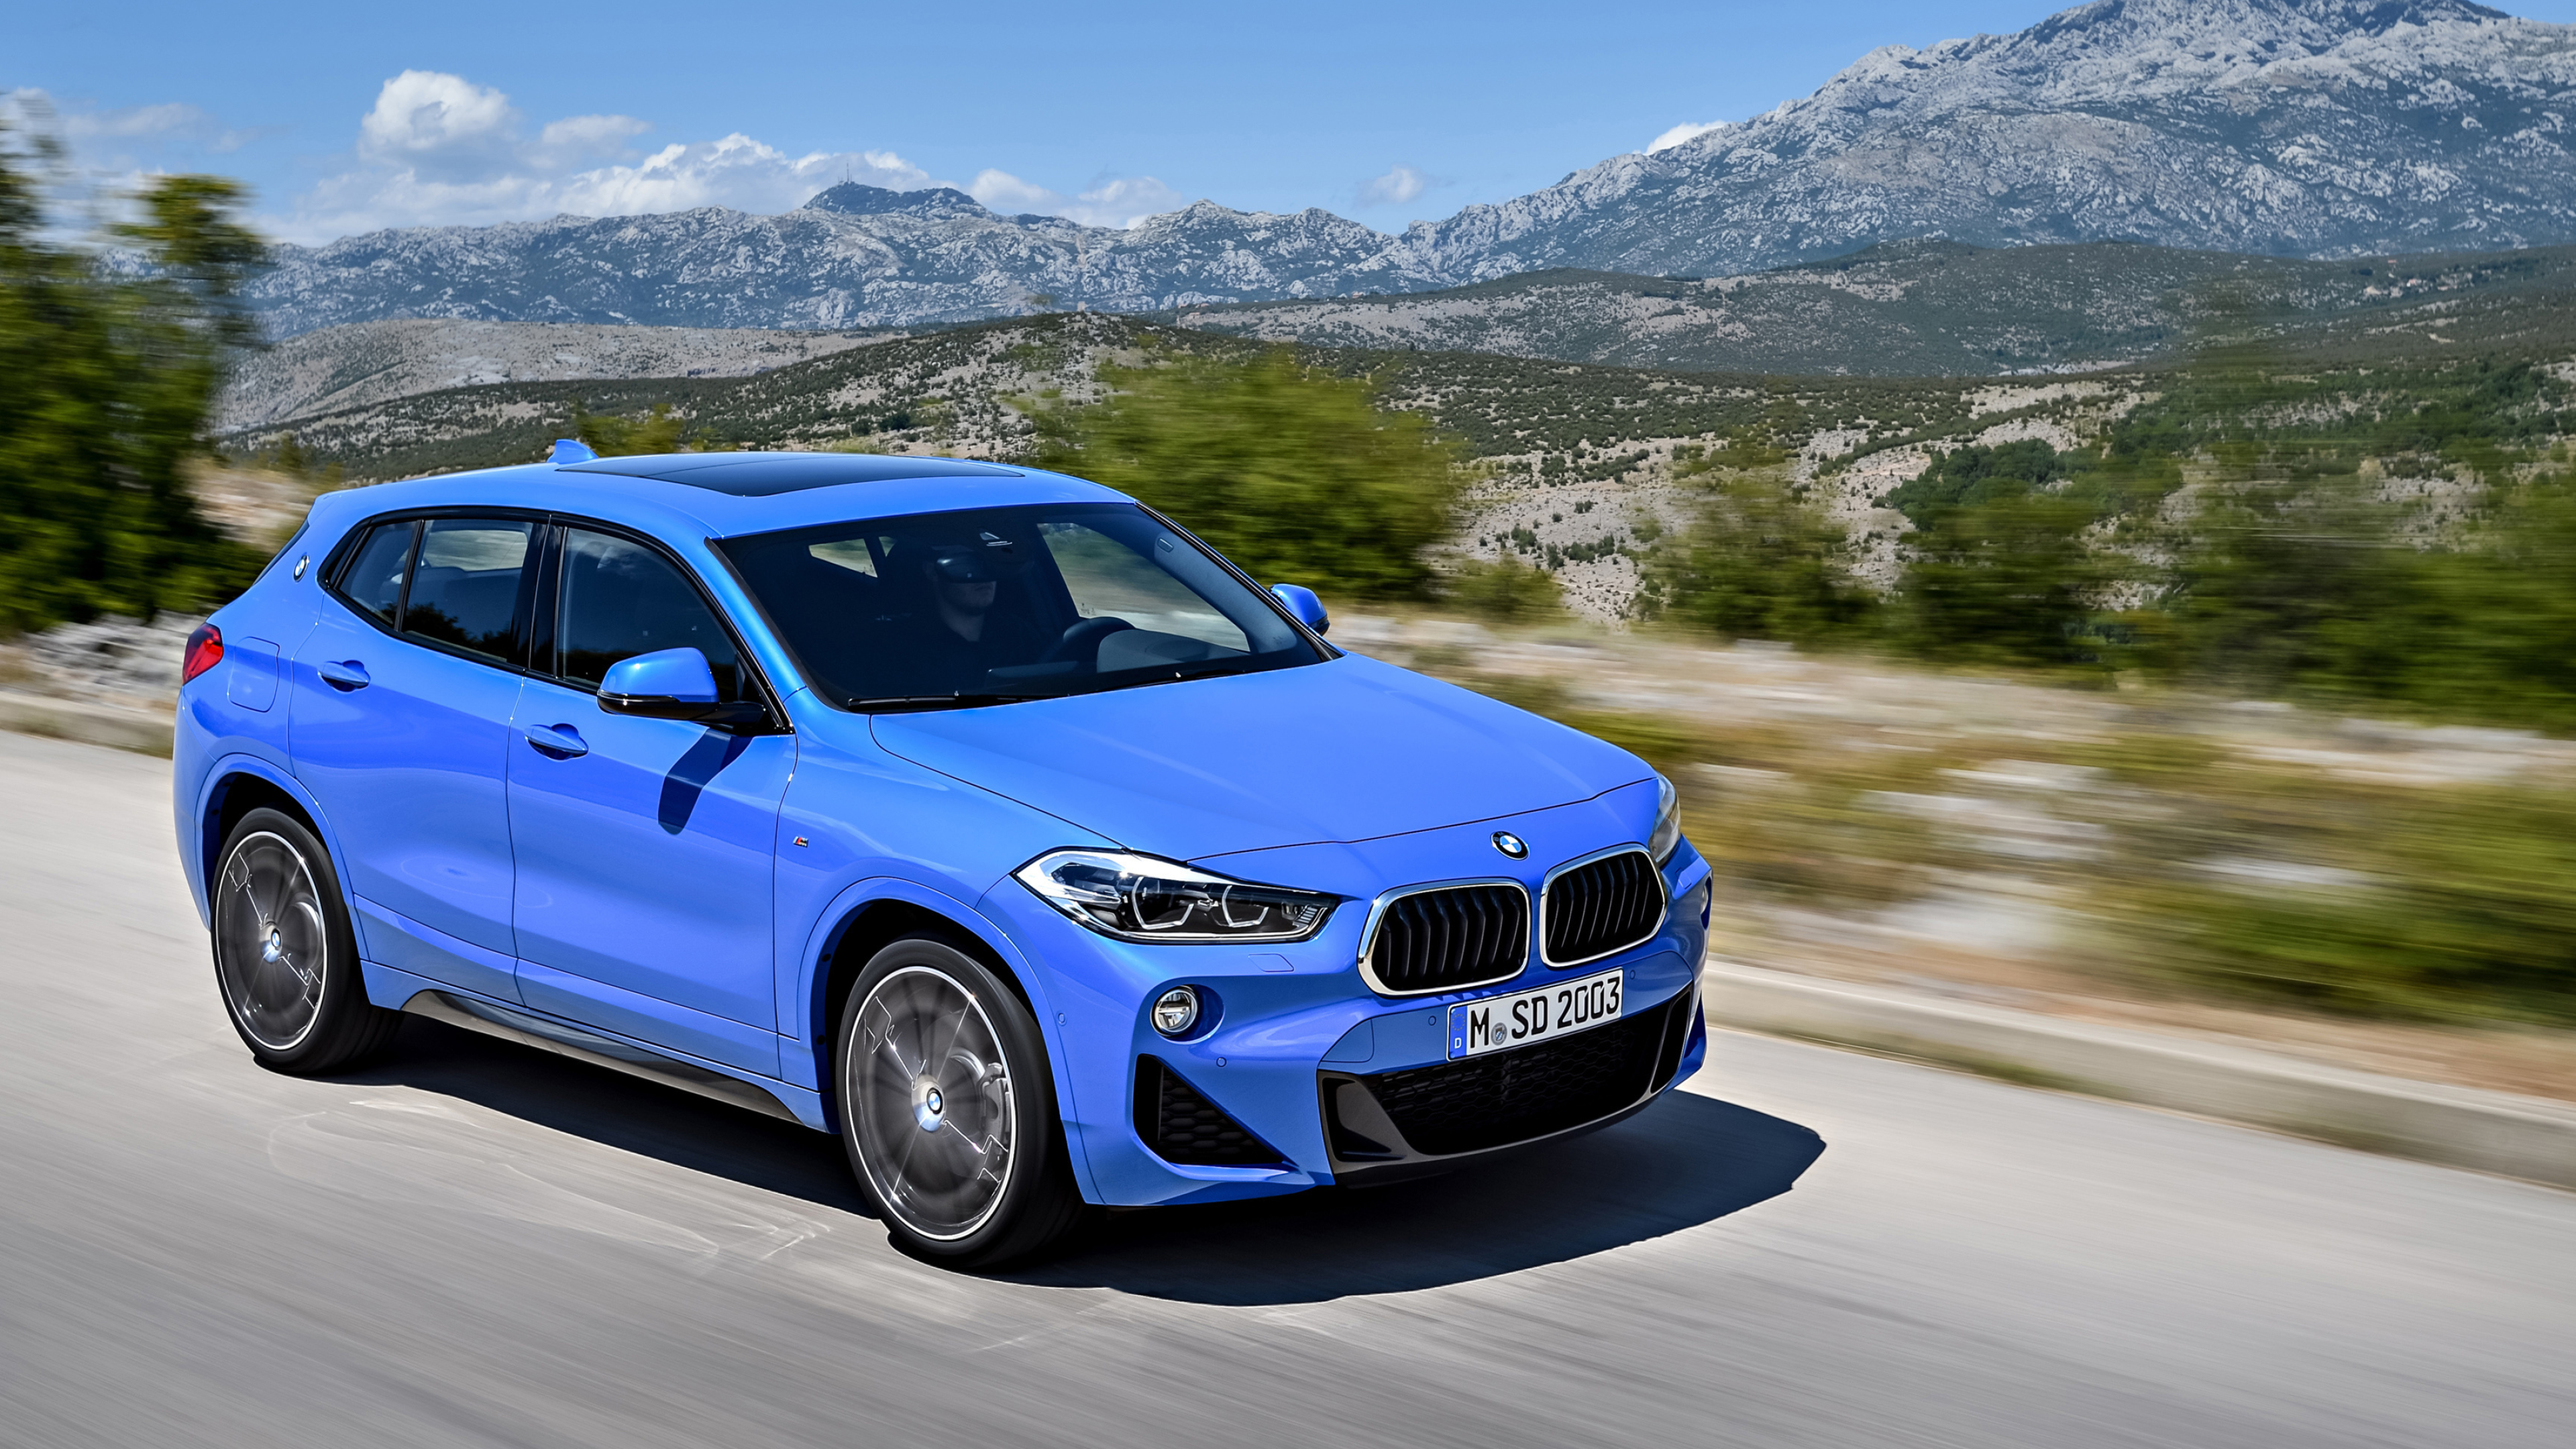 BMW X2, Cars desktop wallpapers, 4K Ultra HD, Unforgettable journey, 3840x2160 4K Desktop